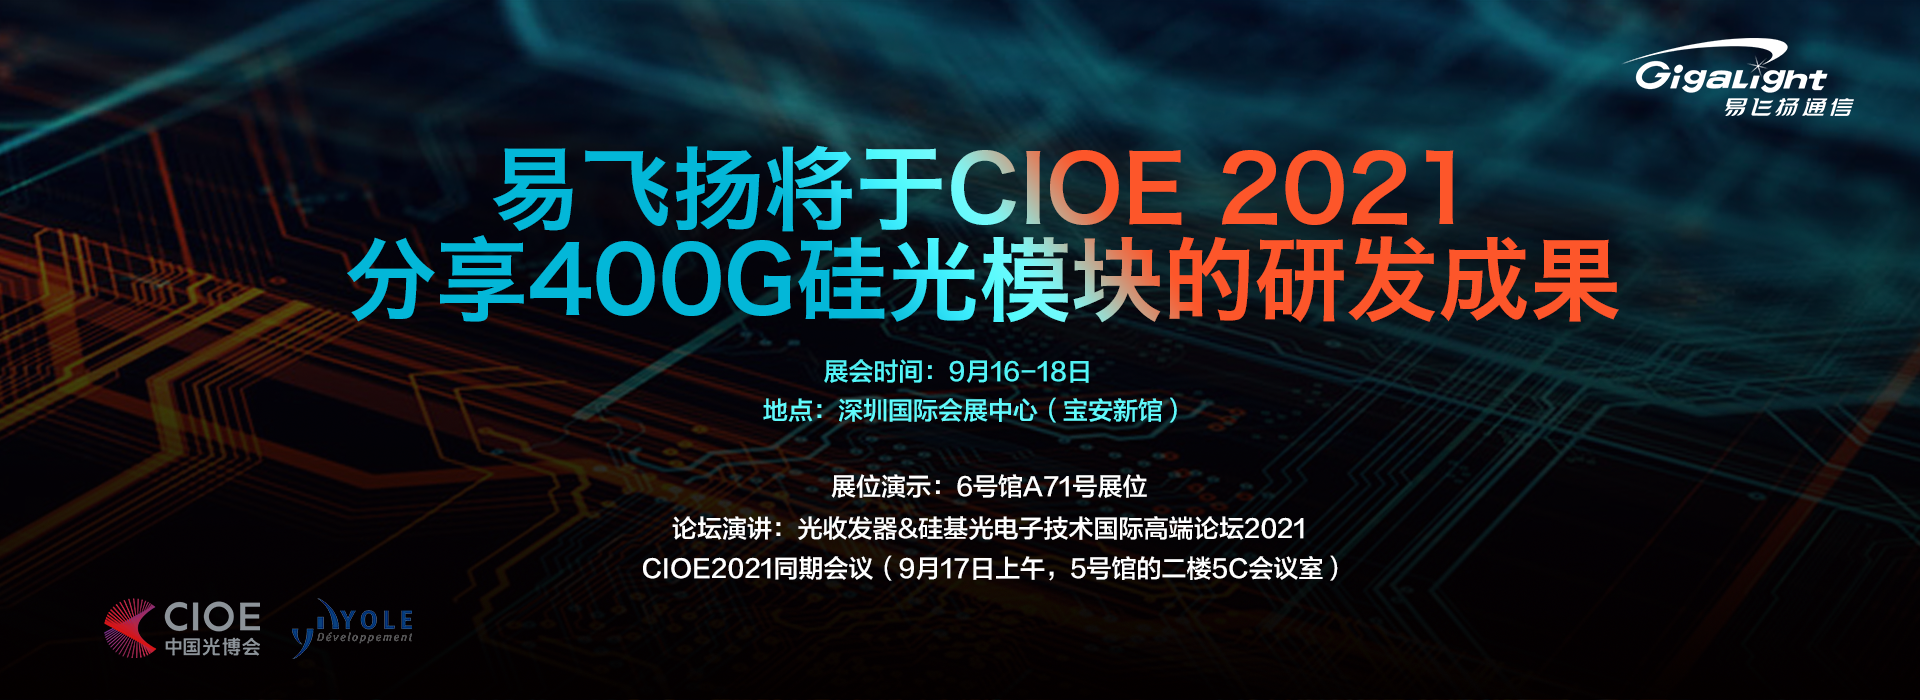 易飞扬将于CIOE 2021分享400G硅光模块的研发成果